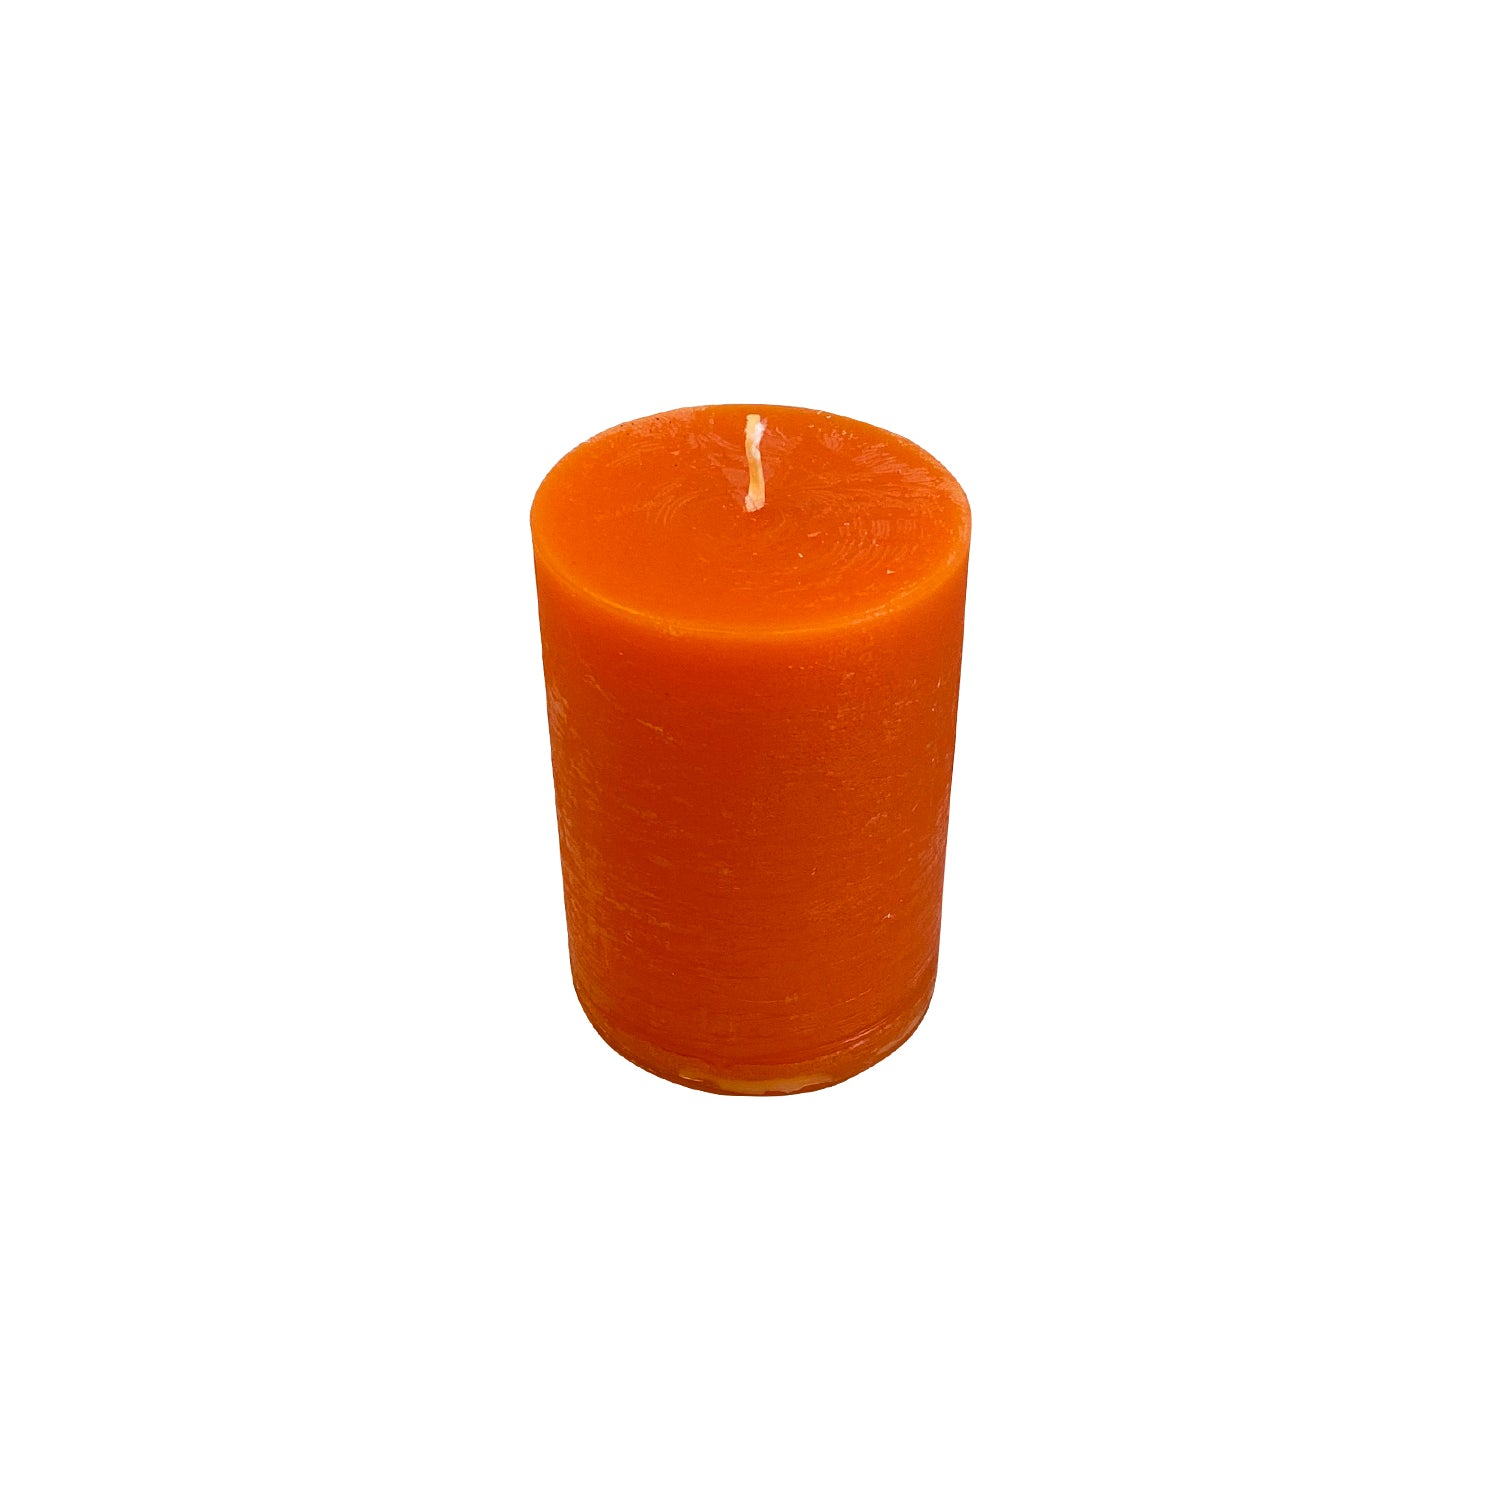 Blok lys - Orange (7cm i diameter)